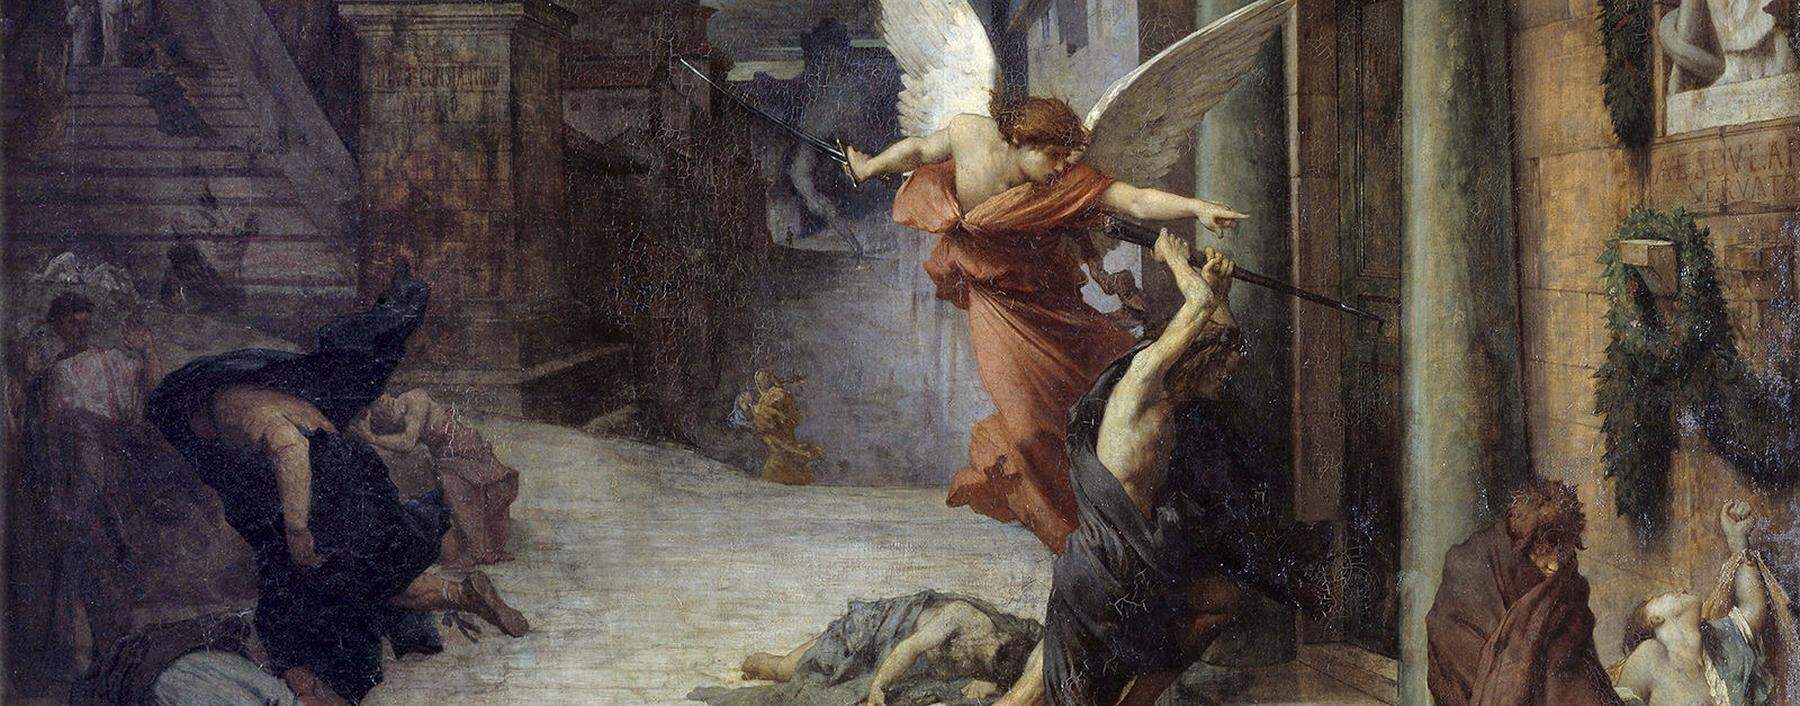 Niemand entgeht der großen Plage, die Armen ohnehin nicht, aber auch nicht die Reichen in ihren Palästen. Eine allegorische Darstellung im antiken Ambiente von Jules-Élie Delaunay (1869).